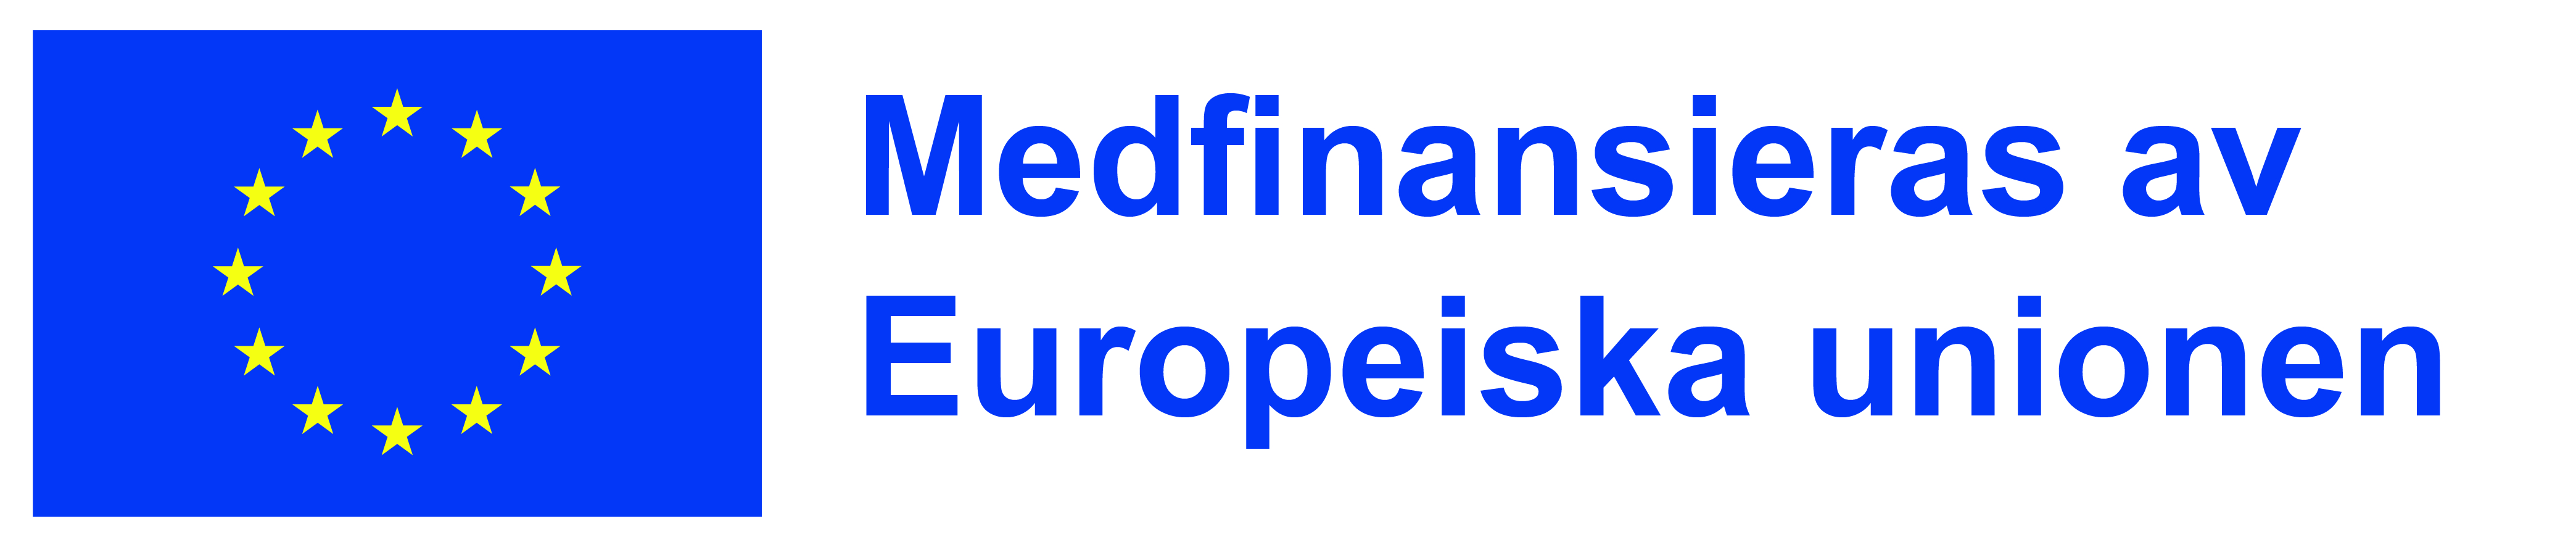 Medfinansieras av Europeiska unionen logo.